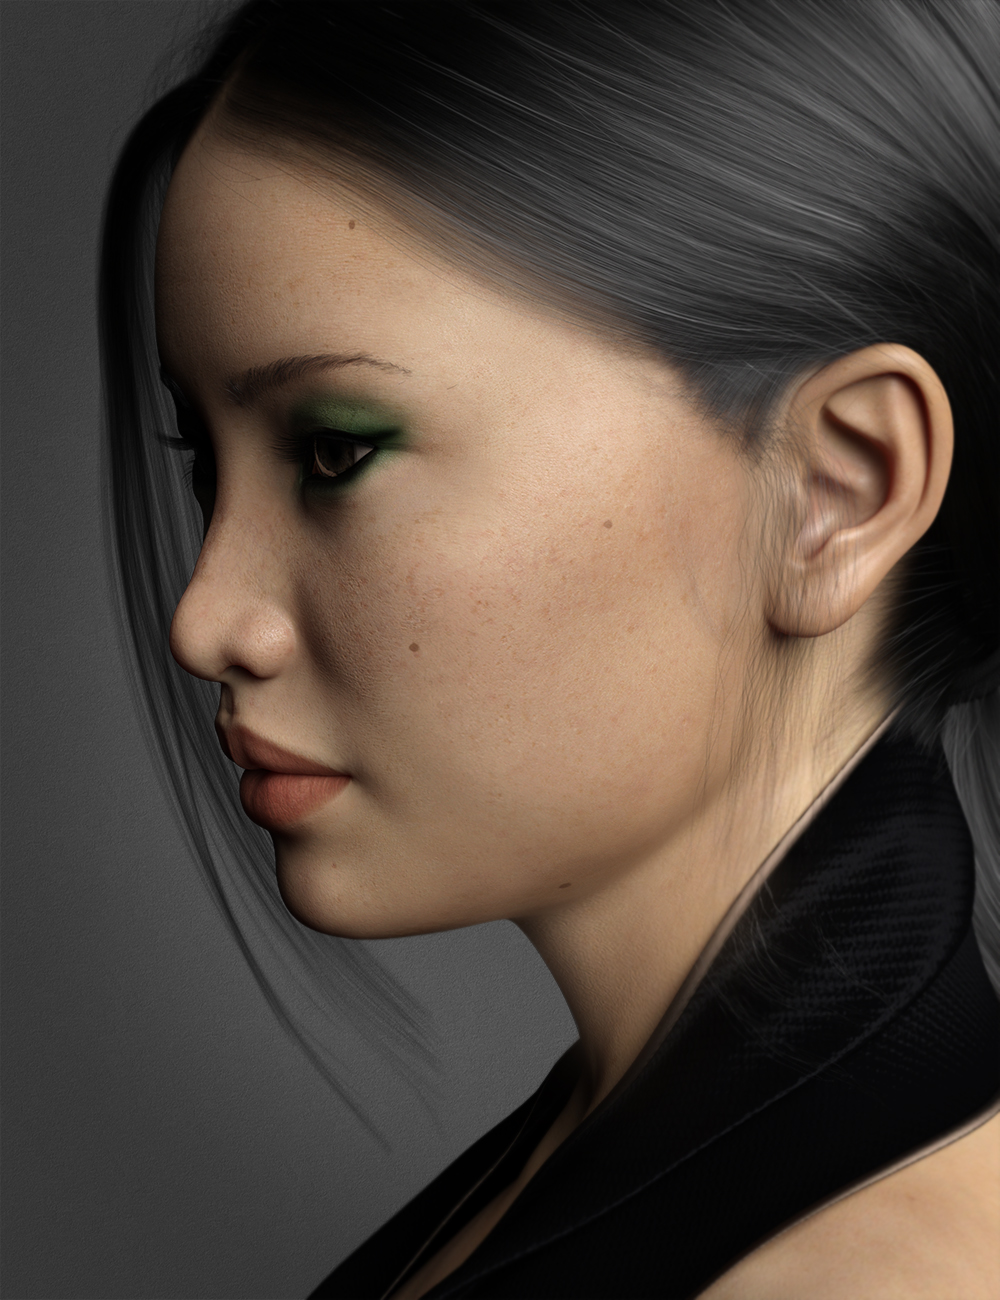 Yoshie HD for Mei Lin 8 by: Fred Winkler ArtSabby, 3D Models by Daz 3D